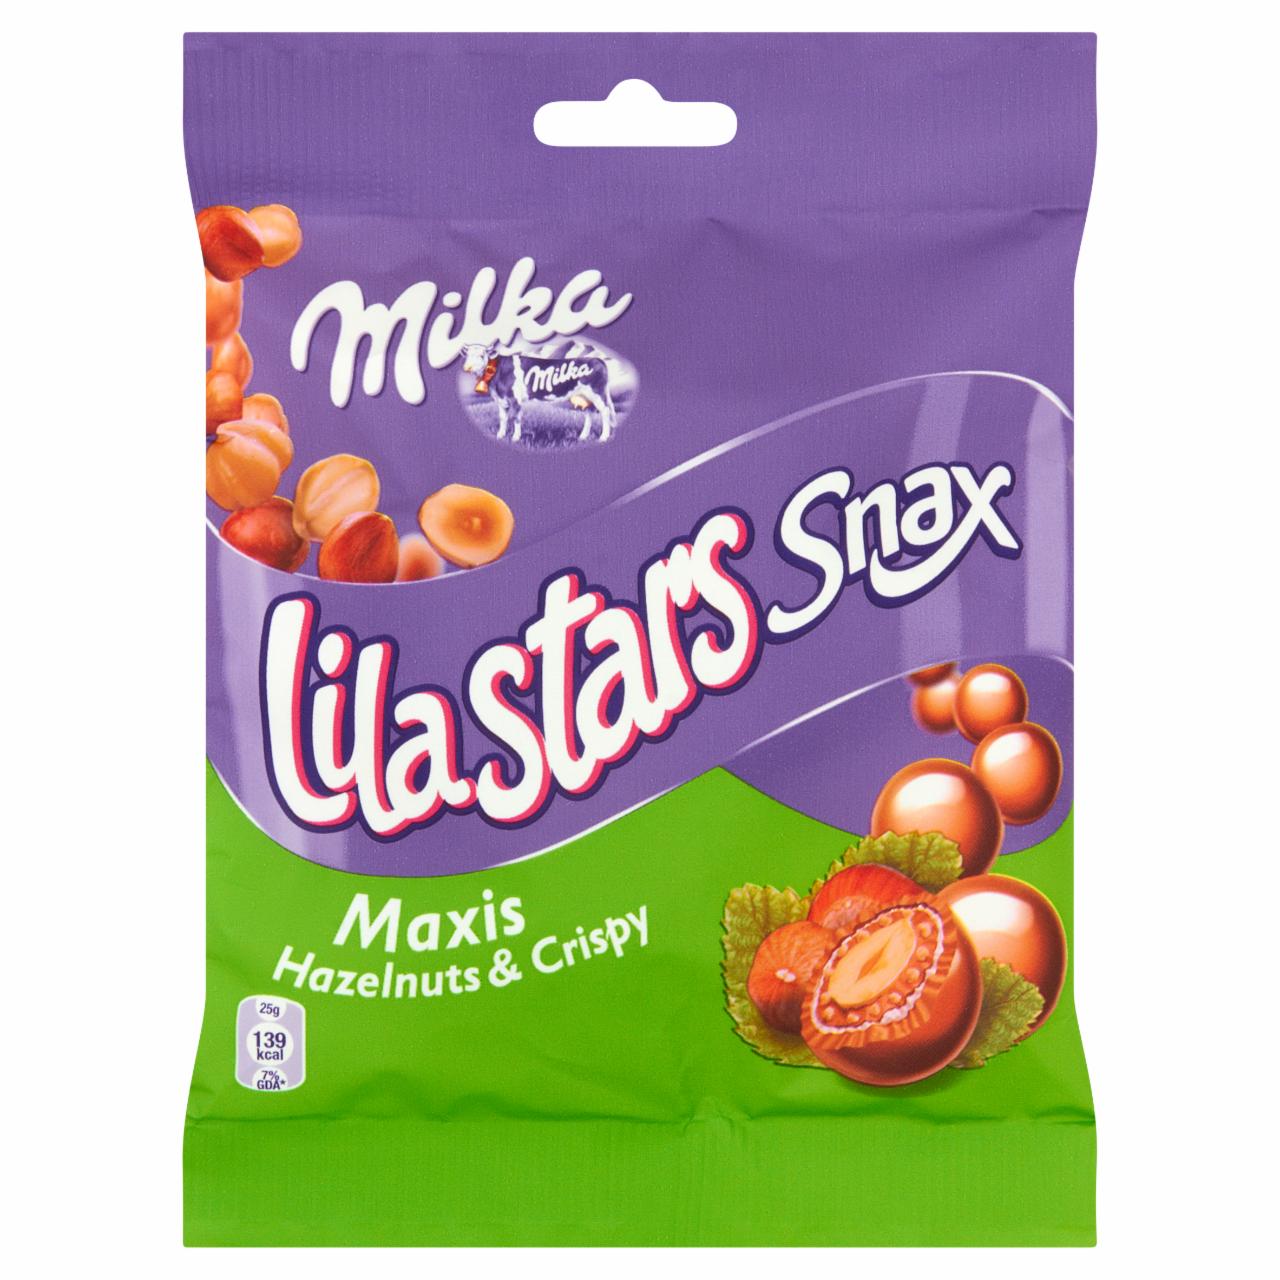 Zdjęcia - Milka Lila Stars Snax Hazelnuts and Crispy Orzechy laskowe w czekoladzie z dodatkiem chrupek 60 g